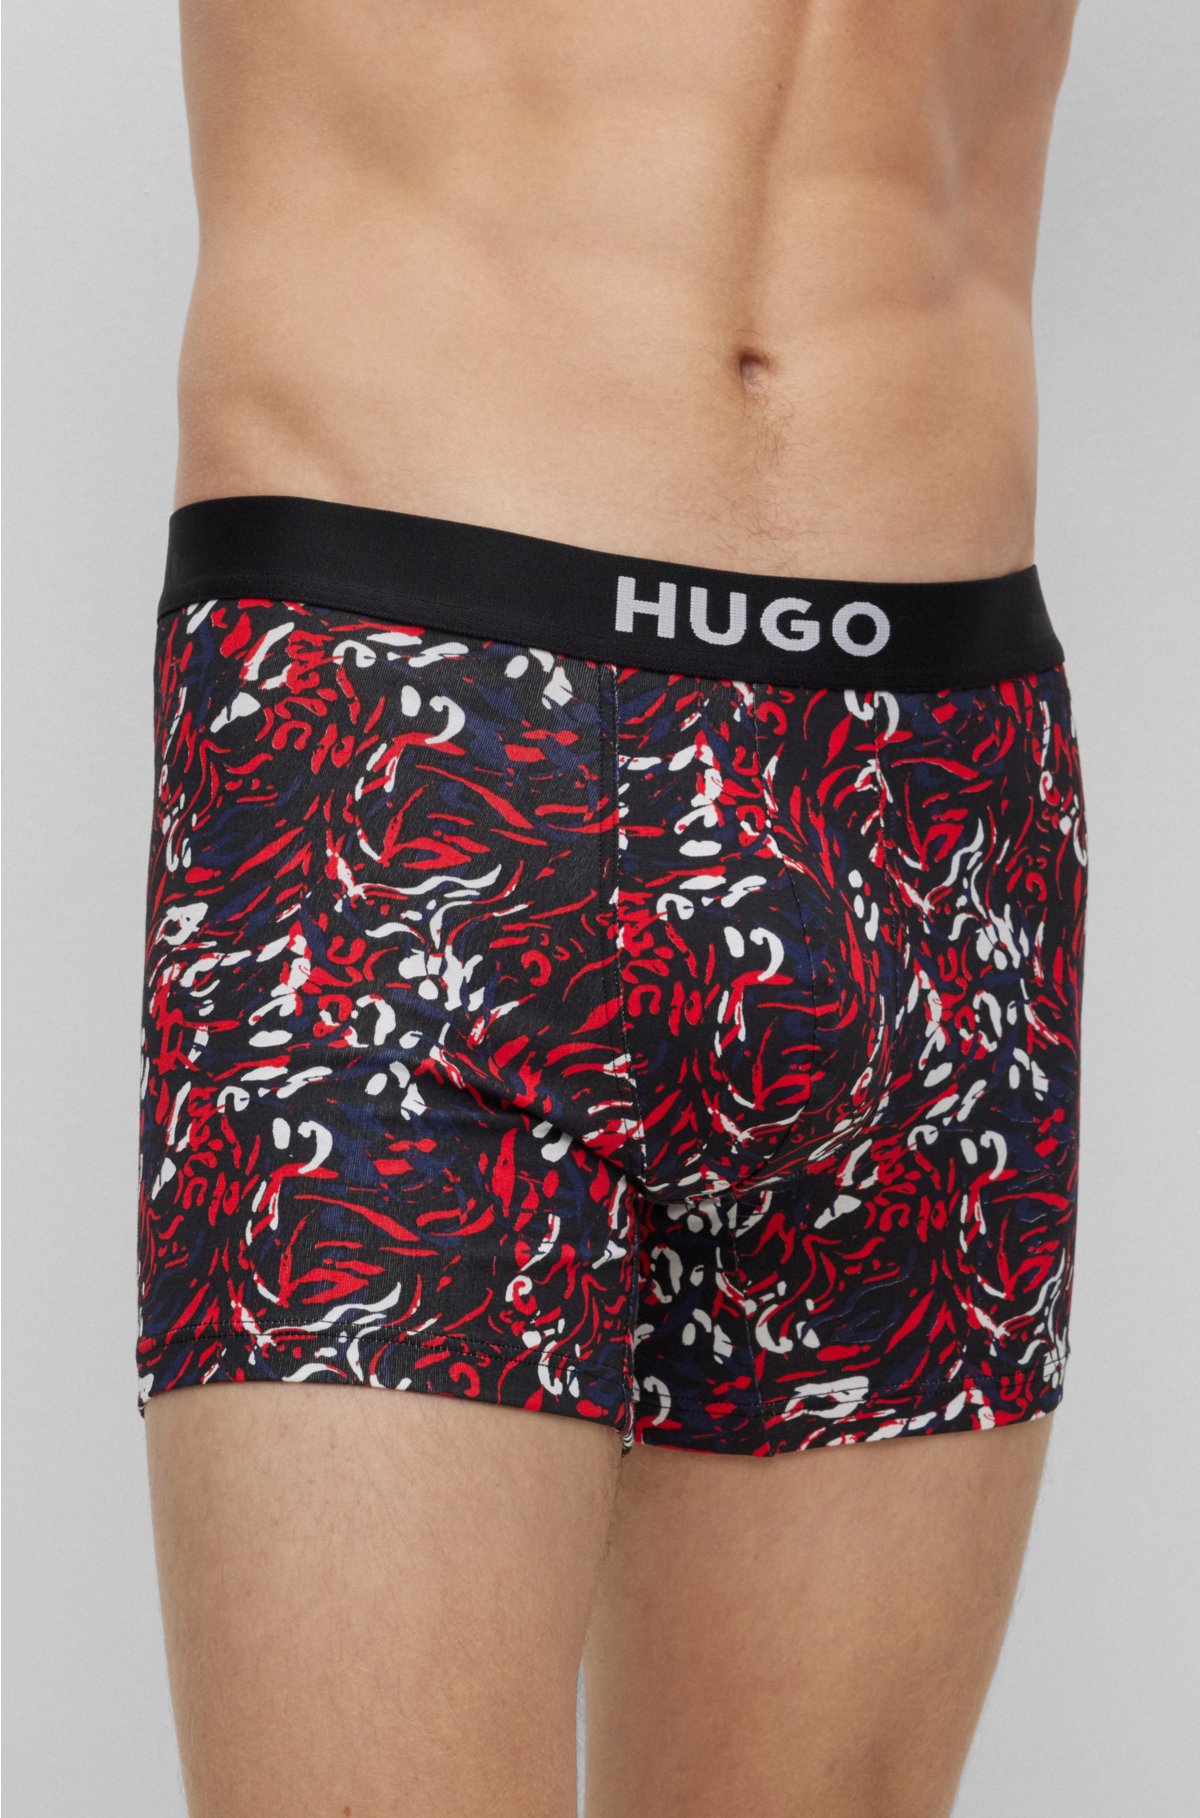 Haigman Haigman Mens 2 Pack Cotton Stretch Boxer Shorts